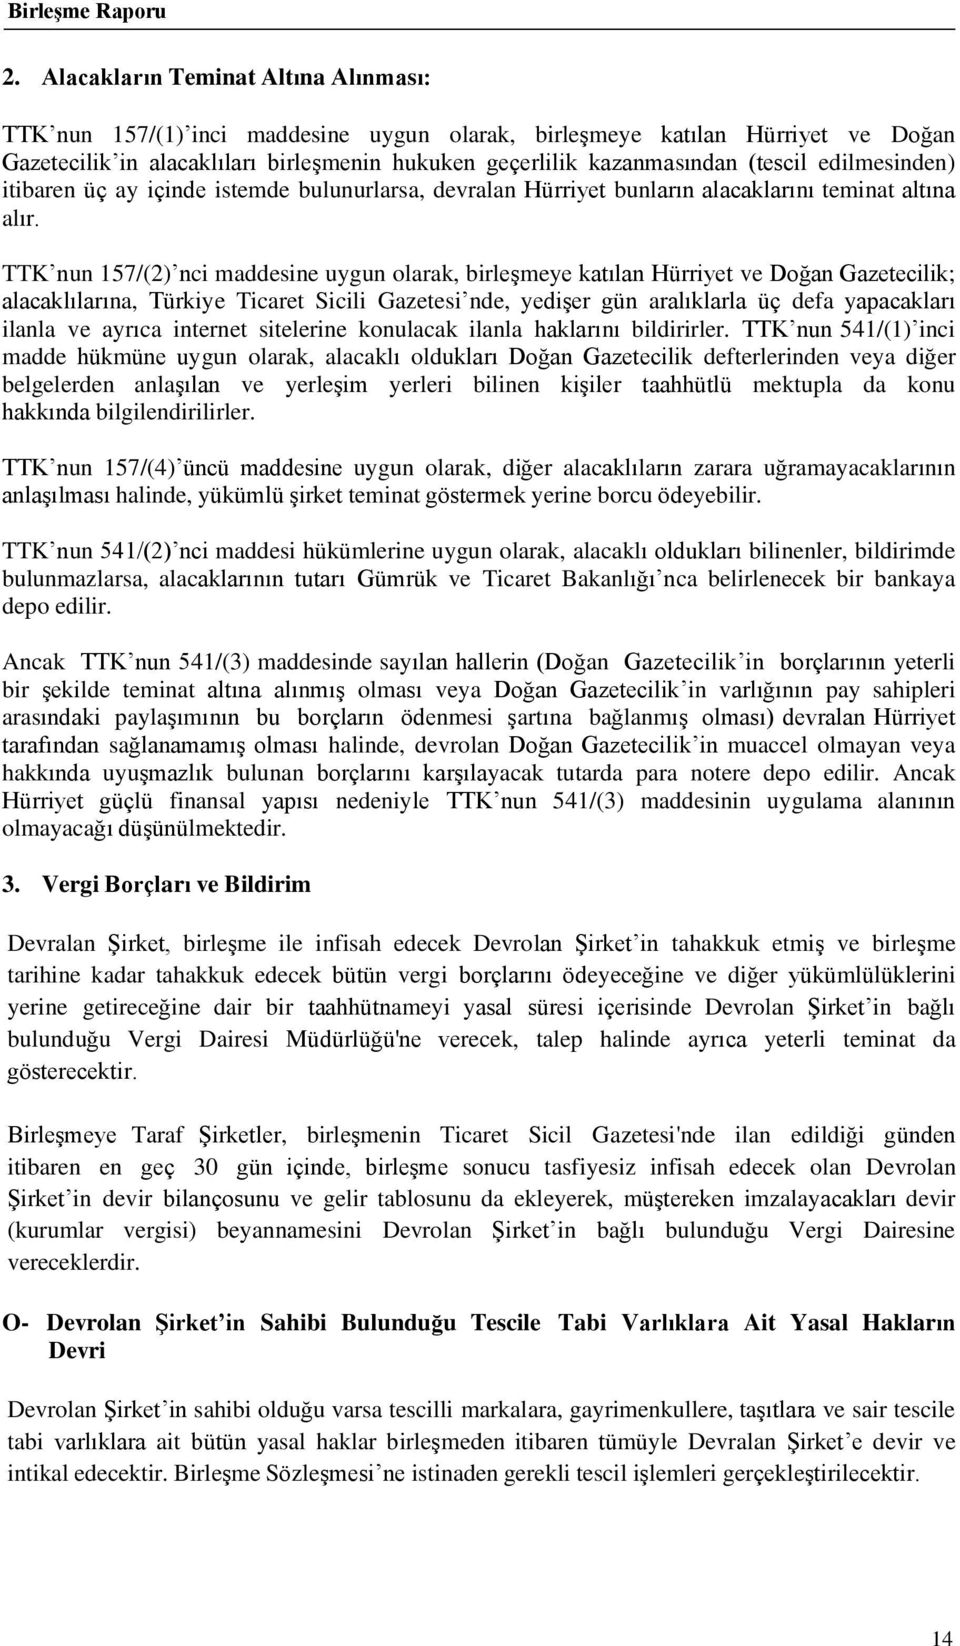 TTK nun 157/(2) nci maddesine uygun olarak, birleşmeye katılan Hürriyet ve Doğan Gazetecilik; alacaklılarına, Türkiye Ticaret Sicili Gazetesi nde, yedişer gün aralıklarla üç defa yapacakları ilanla